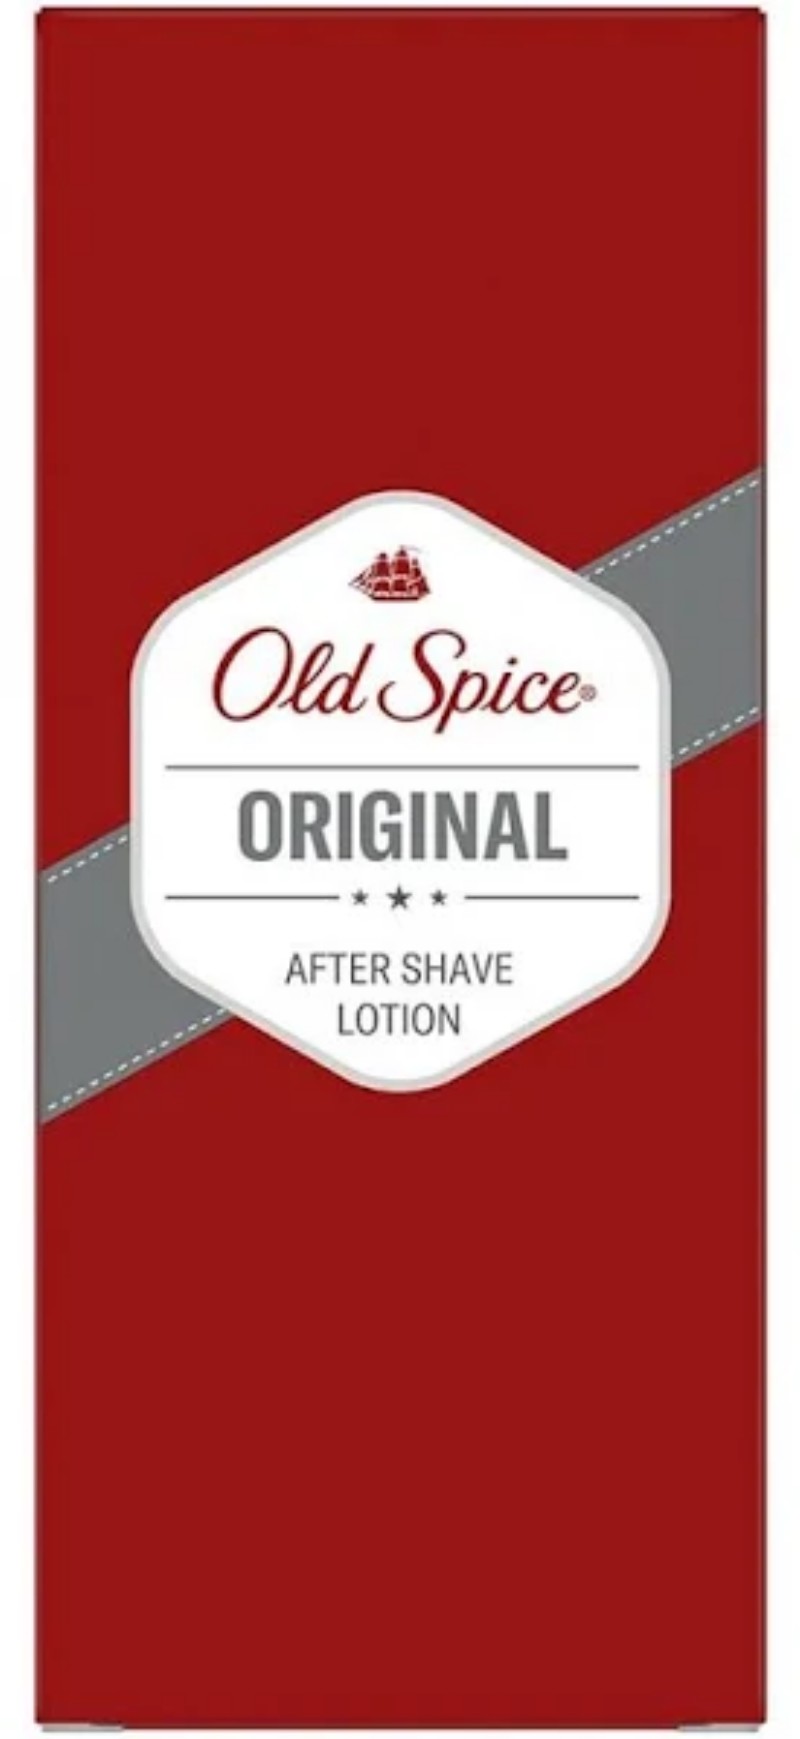 After Shave Old Spice Original 100ml